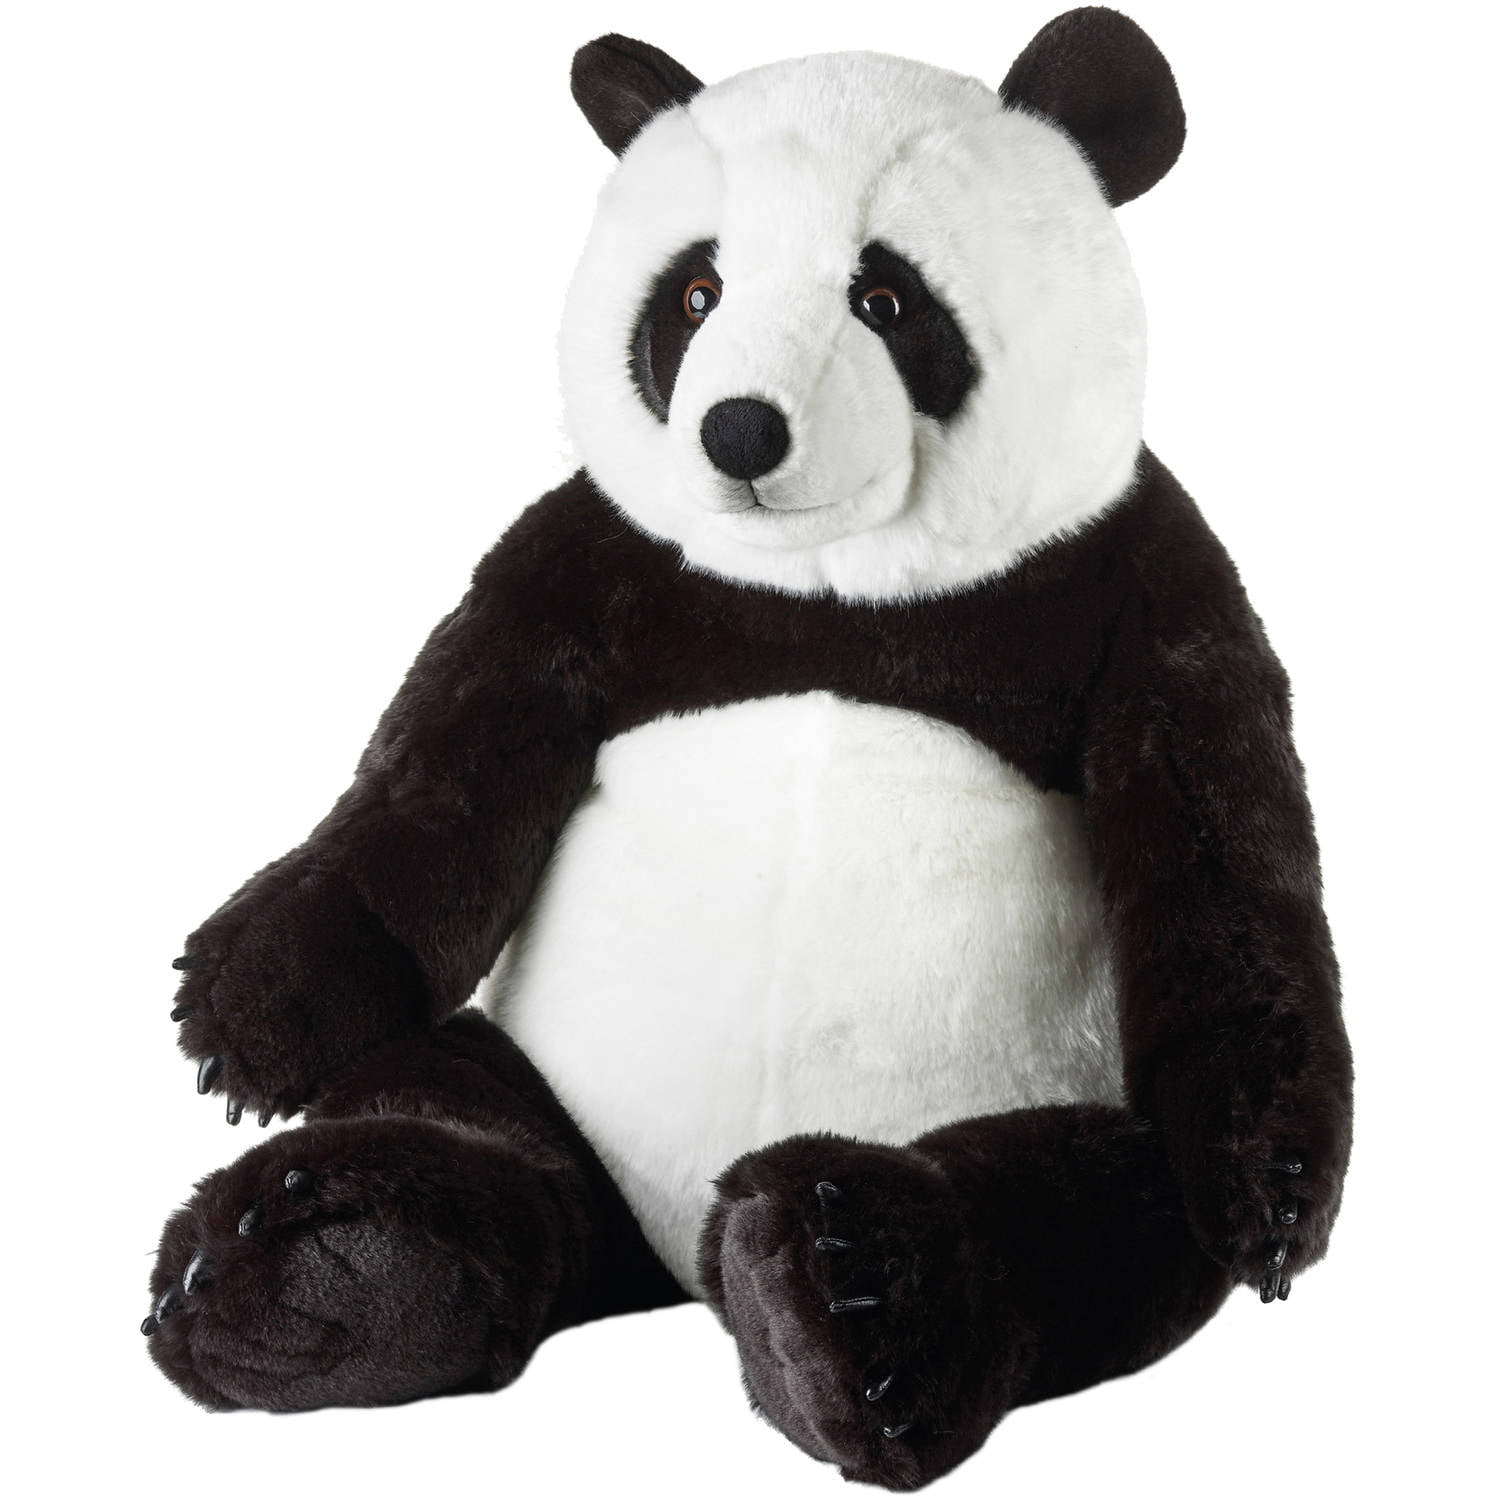 stuffed animals panda bear